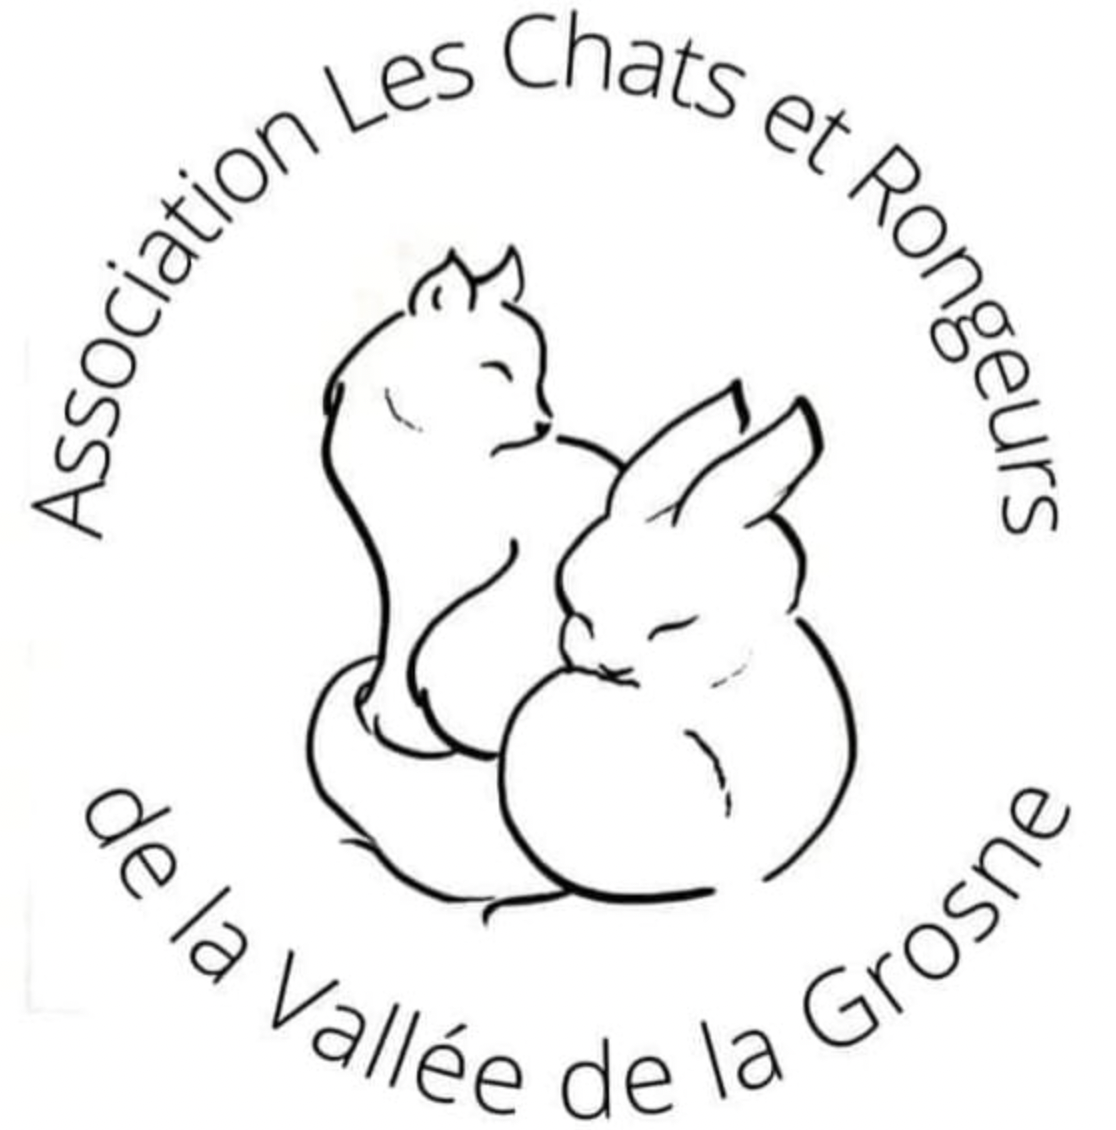 Association Les chats et rongeurs de la vallée de la Grosne